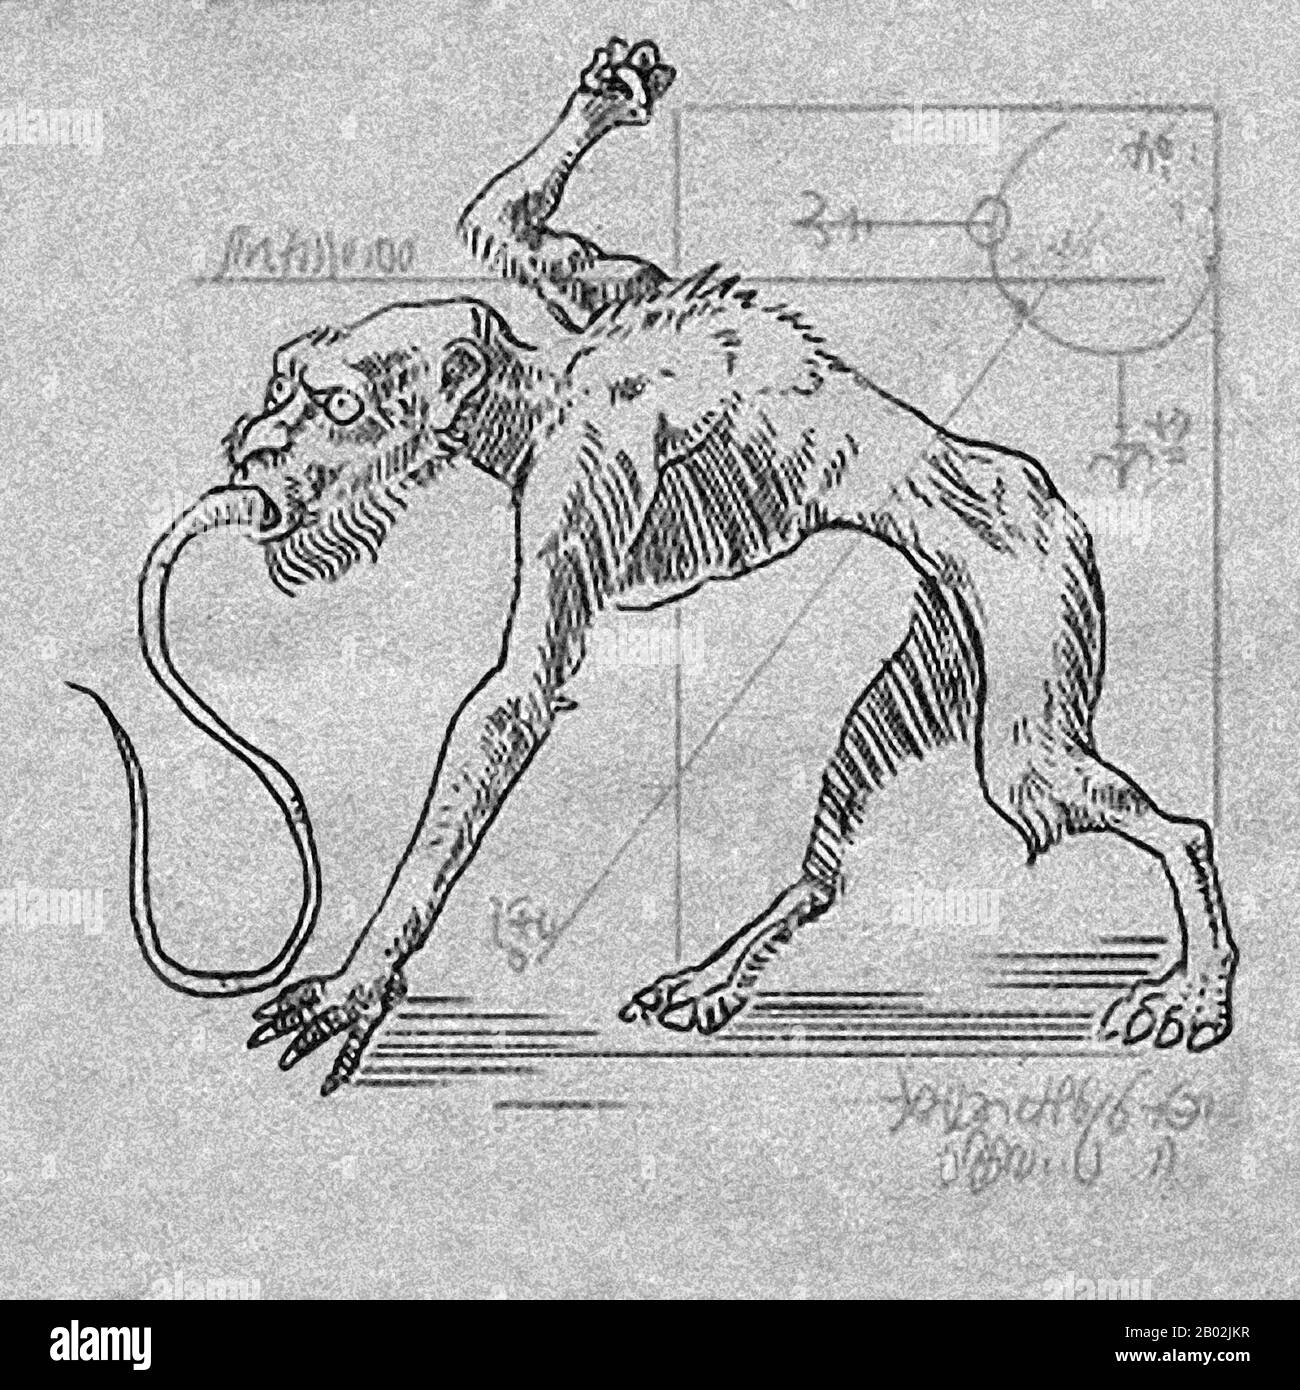 un-aswang-o-asuwang-e-una-creatura-mitica-simile-a-un-vampiro-nel-folklore-filippino-ed-e-oggetto-di-una-vasta-varieta-di-miti-e-storie-i-coloni-spagnoli-notarono-che-l-aswang-era-il-piu-temuto-tra-le-mitiche-creature-delle-filippine-anche-nel-16th-secolo-il-mito-dell-aswang-e-ben-noto-in-tutte-le-filippine-tranne-nella-regione-di-ilocos-che-e-l-unica-regione-che-non-ha-un-mito-equivalente-e-particolarmente-temuto-nelle-regioni-occidentali-visayan-come-capiz-iloilo-negros-bohol-masbate-aklan-antique-e-siquijor-altri-nomi-regionali-per-l-aswang-2b02jkr